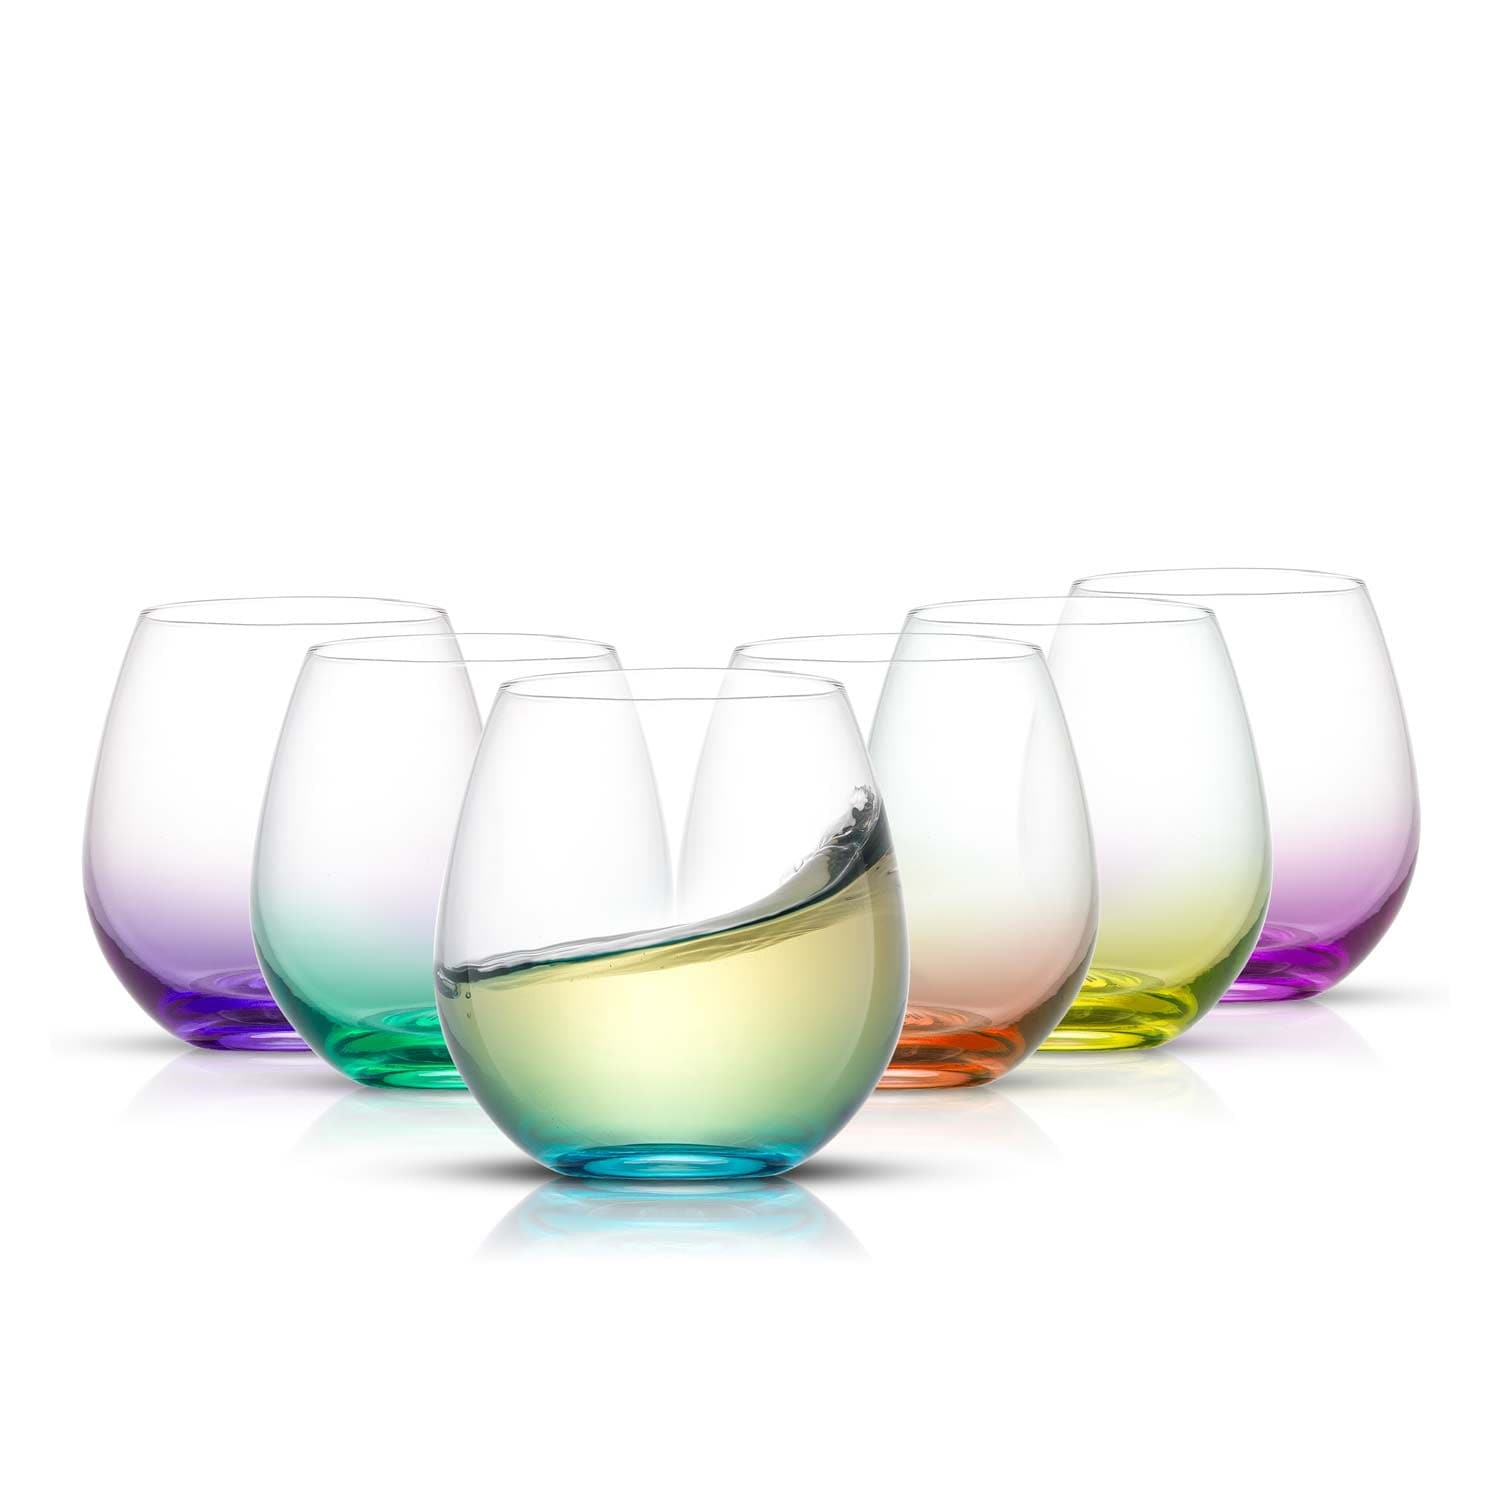 Beyond　15　of　Wine　JoyJolt　Stemless　Set　Bath　Glasses　Hue　Colored　34711251　oz　Bed